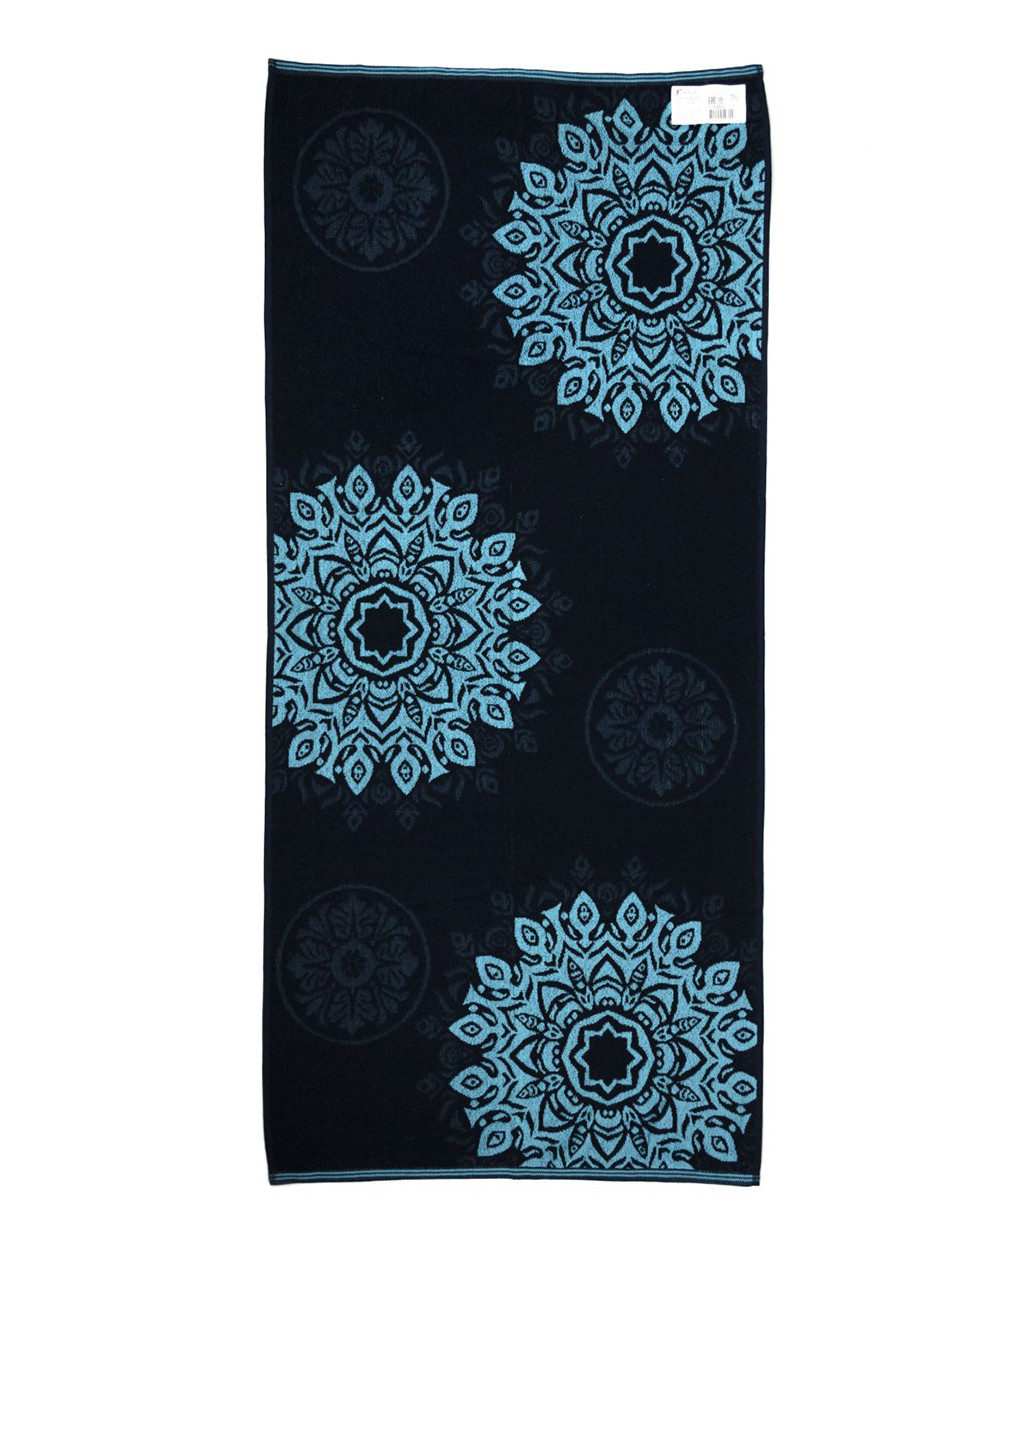 Речицкий текстиль полотенце, 67х150 см рисунок синий производство - Беларусь